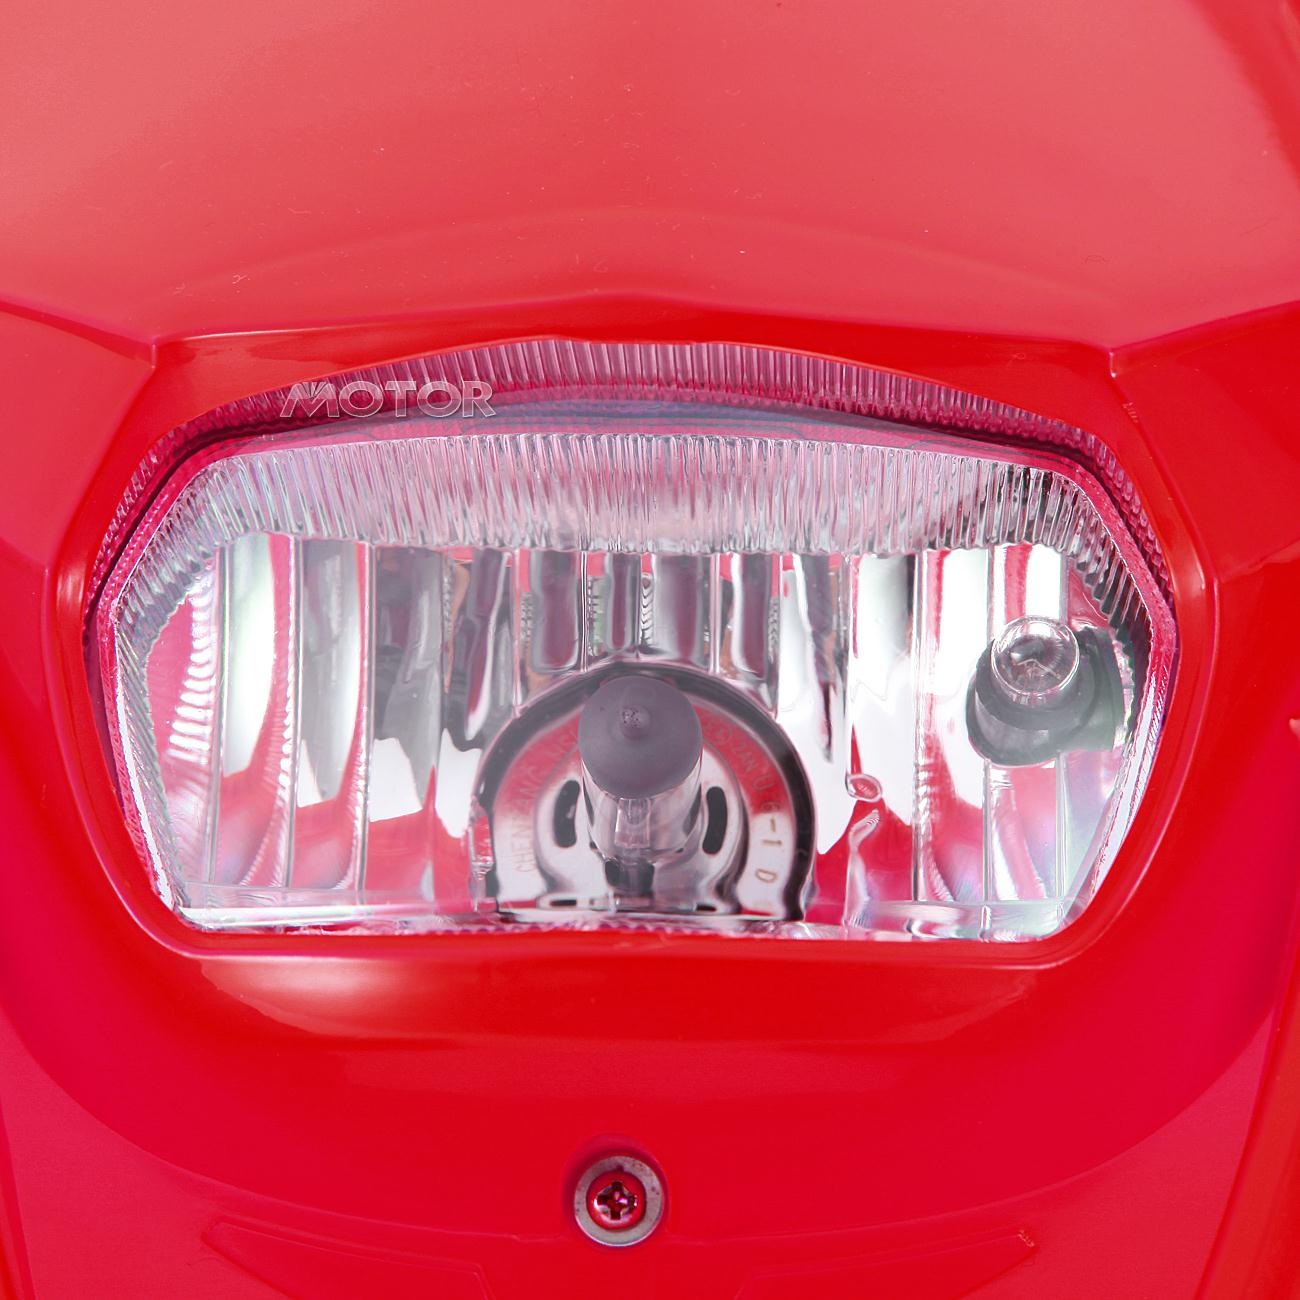 Motors LED Headlight Fairing Fit for Honda CR125R CR500R 